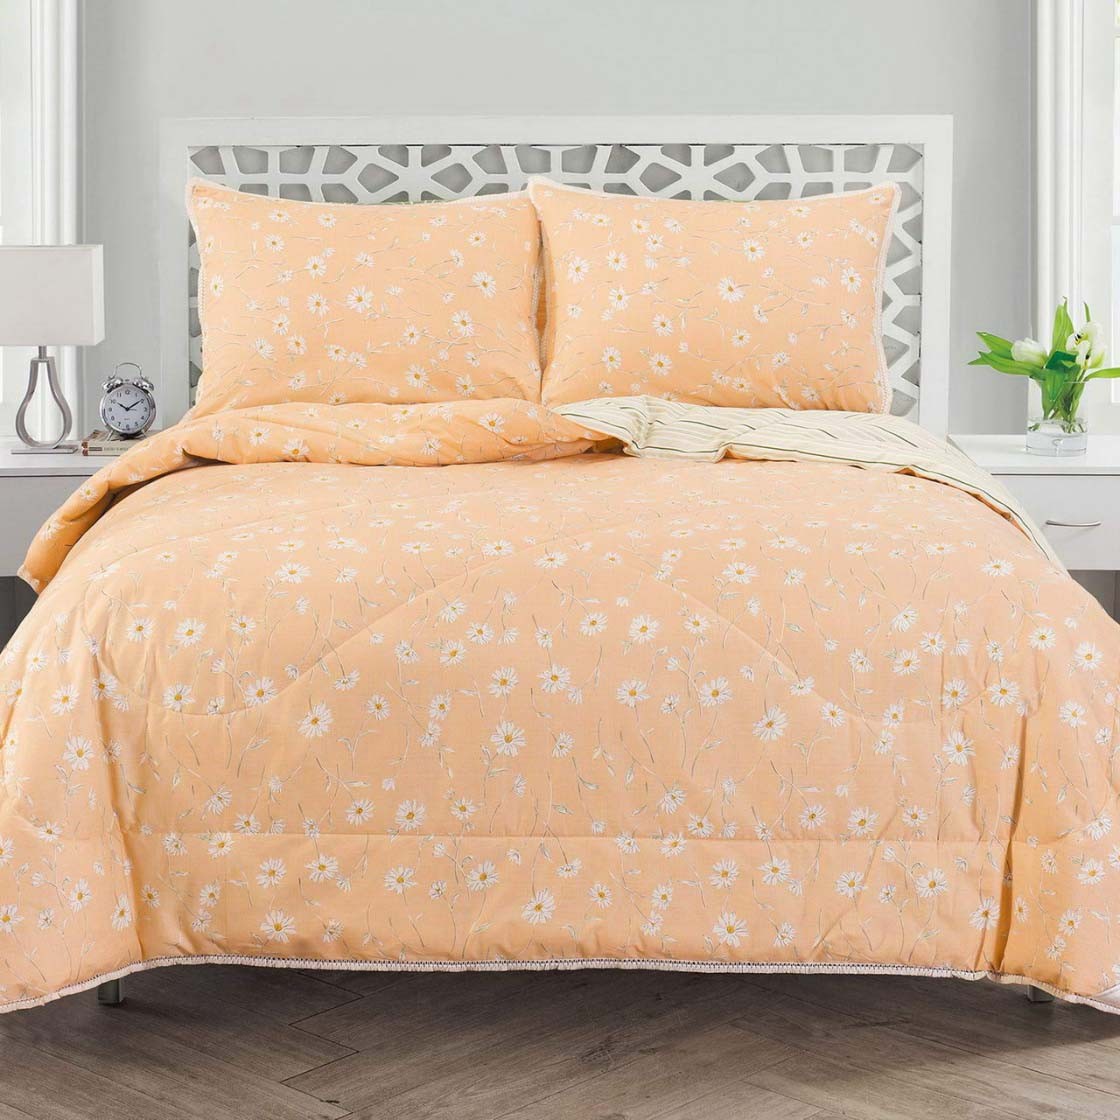 Постельное белье с одеялом Люсиль цвет: персиковый (Семейное (2 одеяла-покрывала))